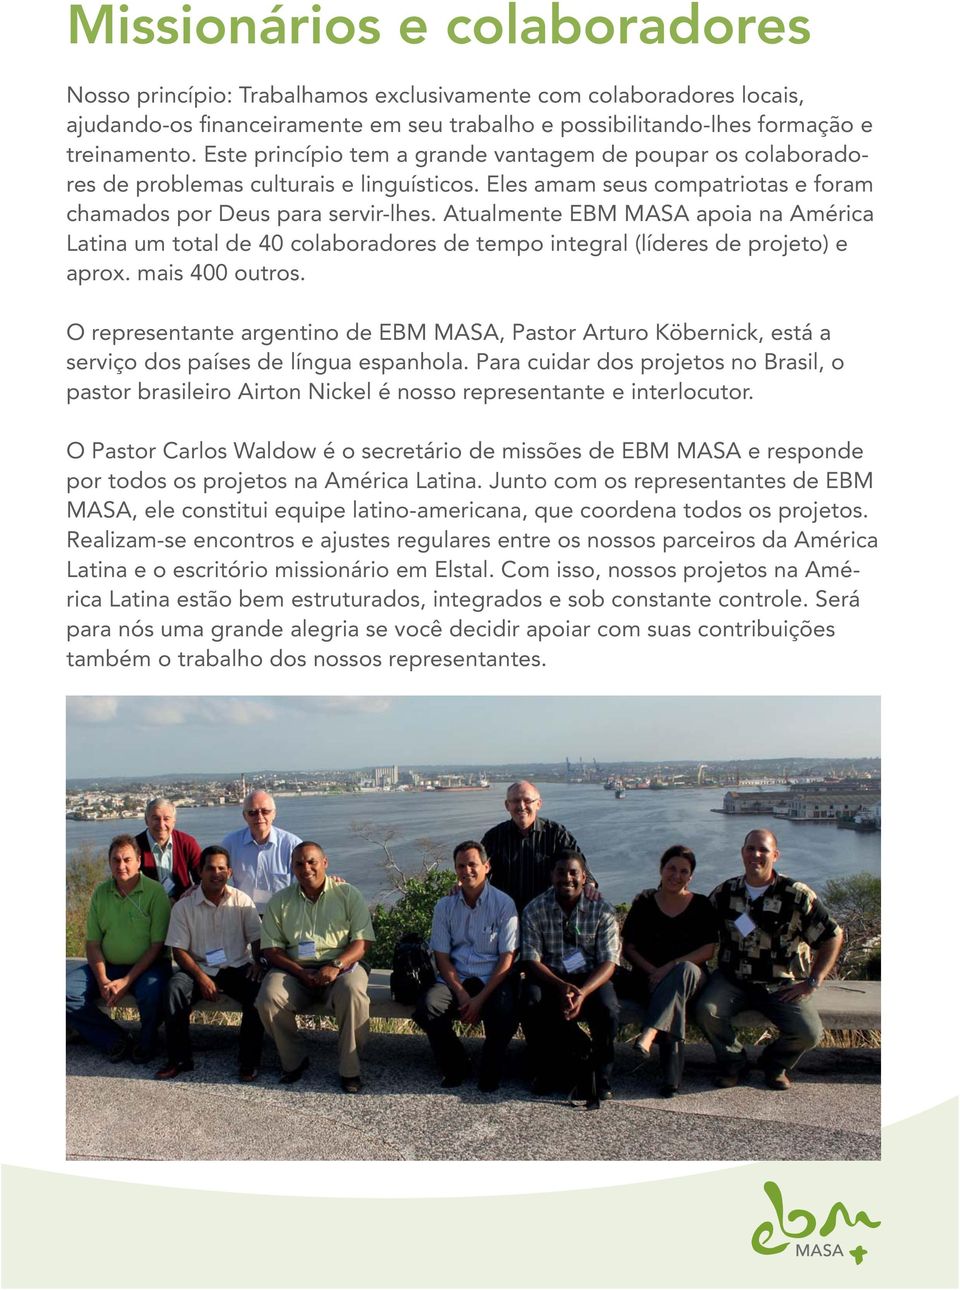 Atualmente EBM MASA apoia na América Latina um total de 40 colaboradores de tempo integral (líderes de projeto) e aprox. mais 400 outros.